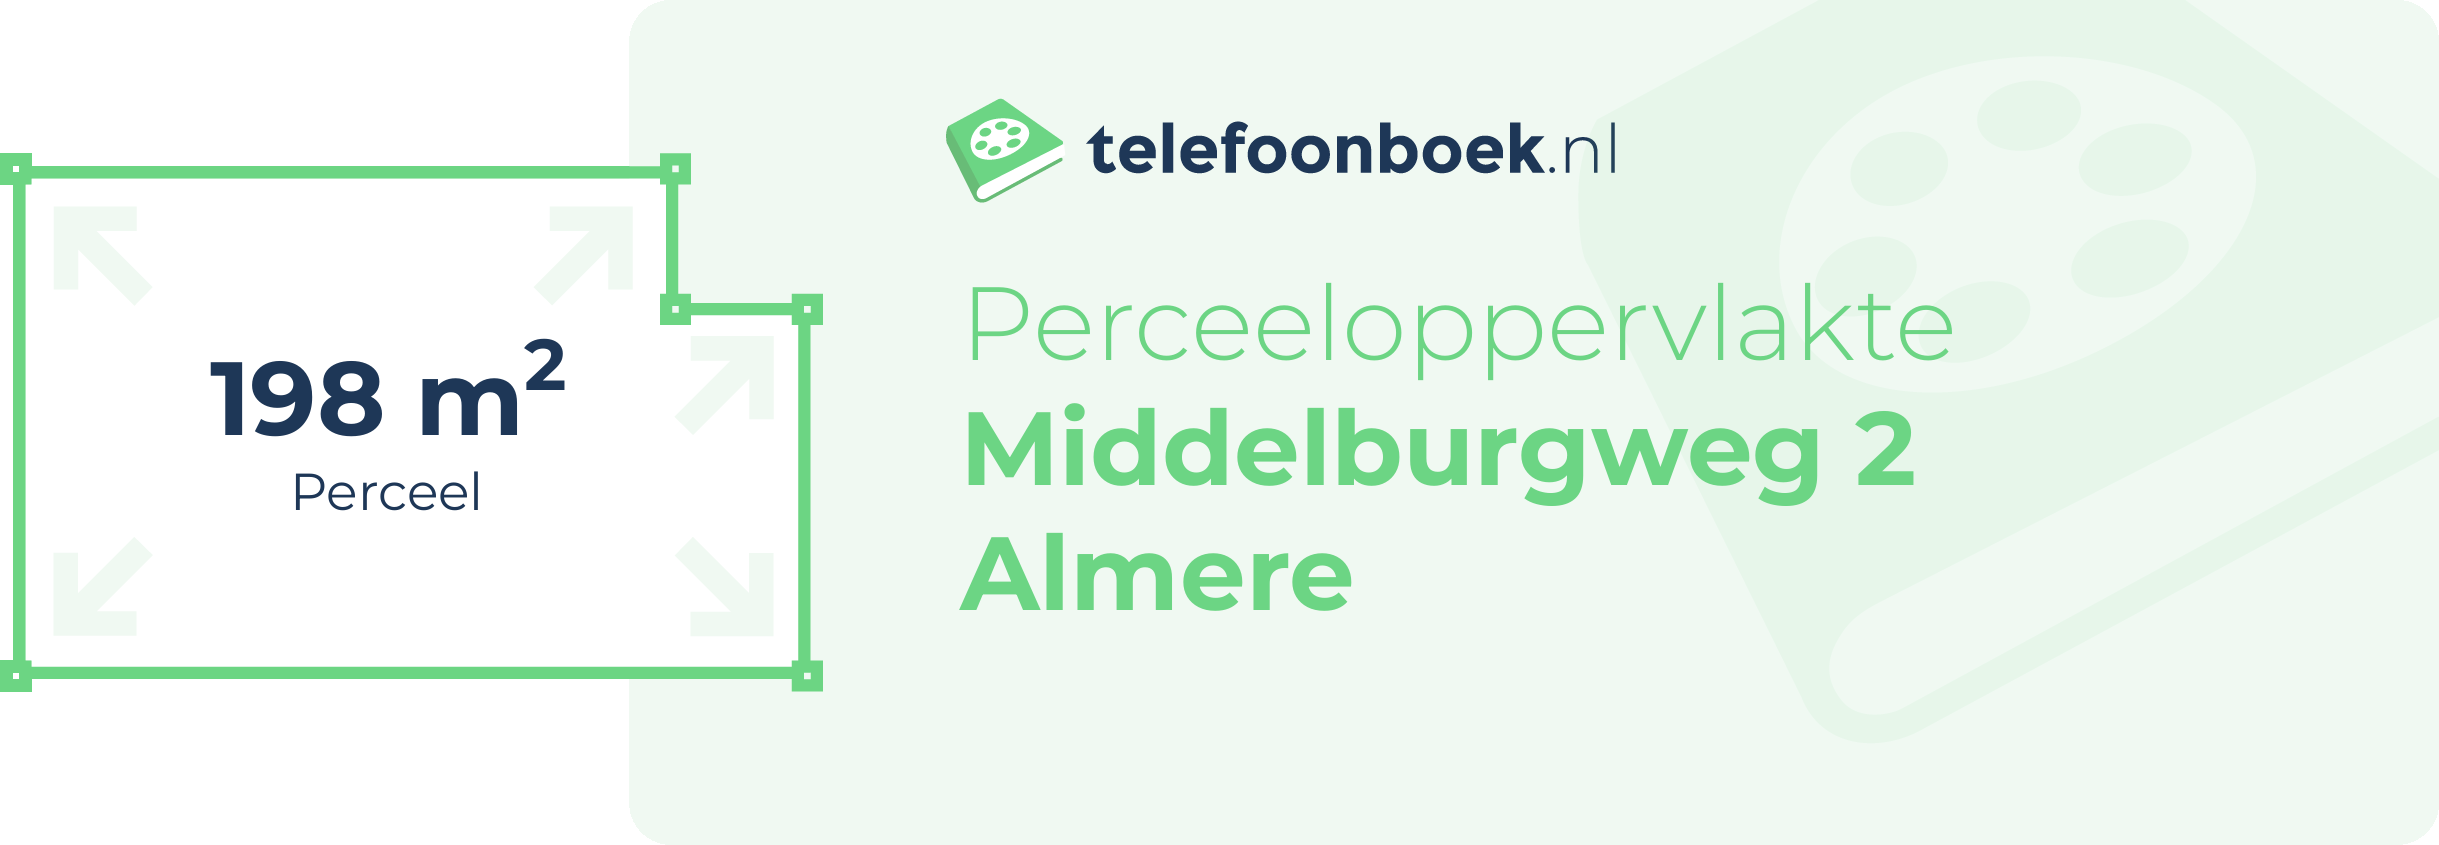 Perceeloppervlakte Middelburgweg 2 Almere